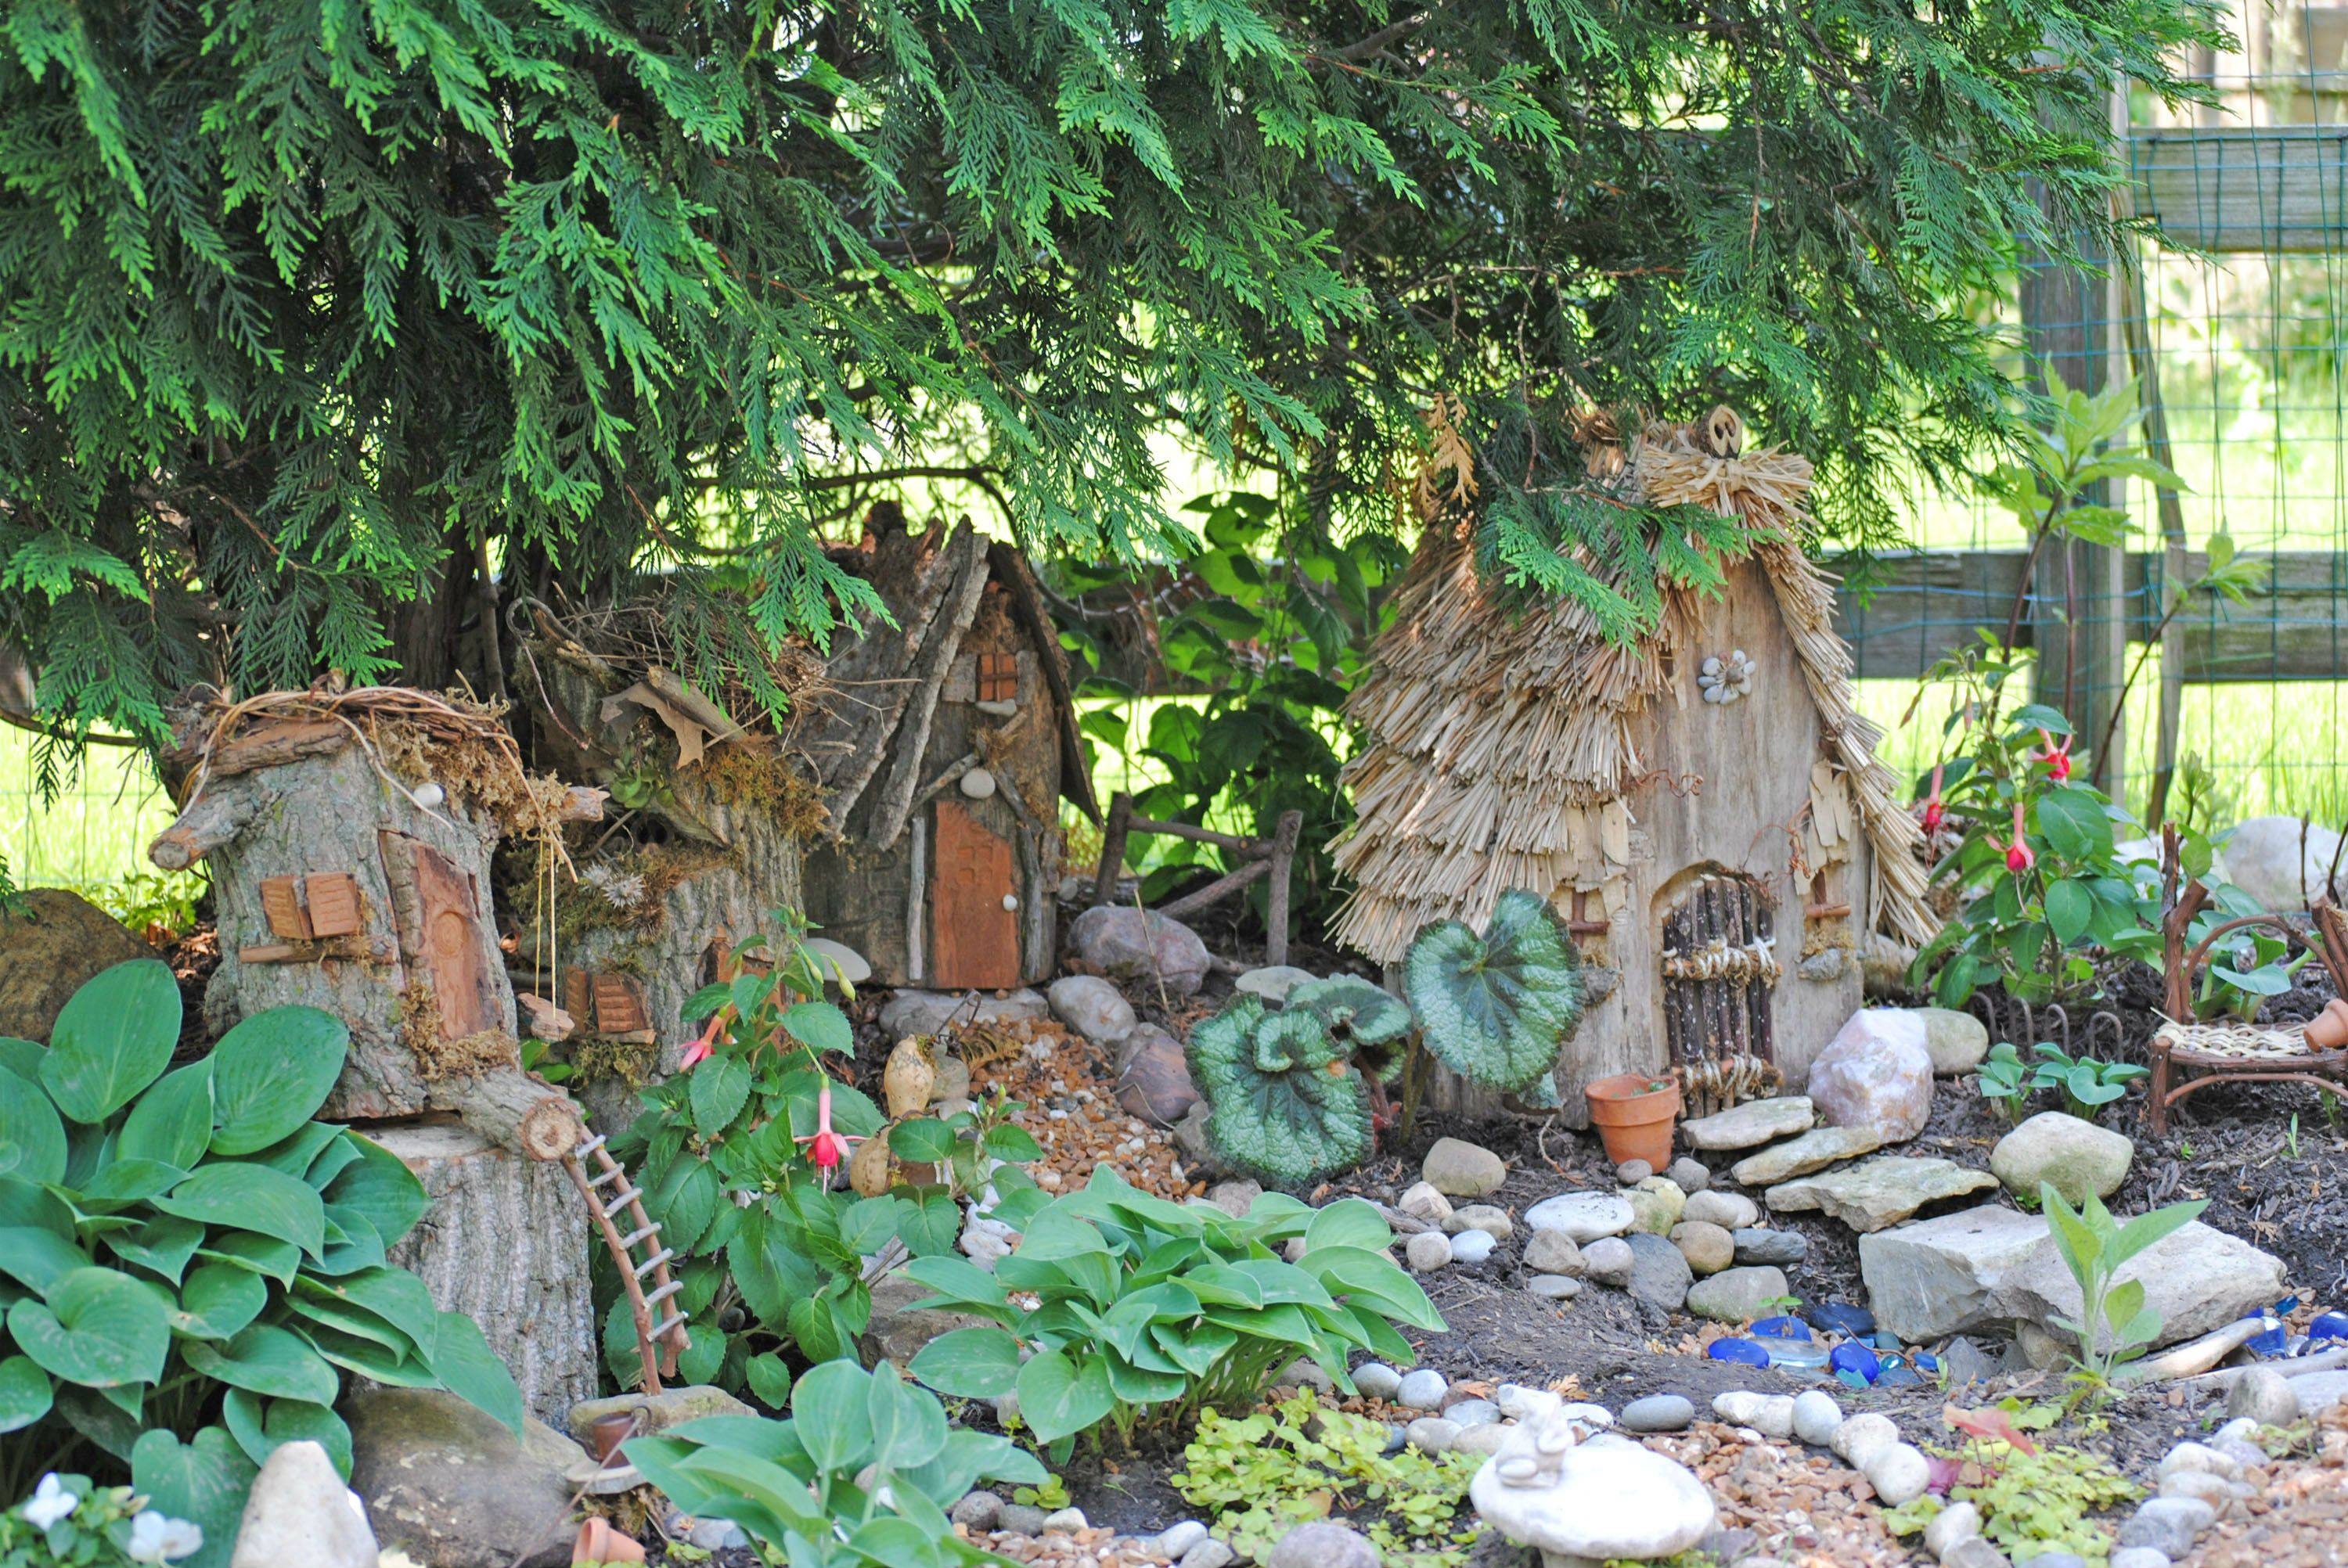 Fairy garden house